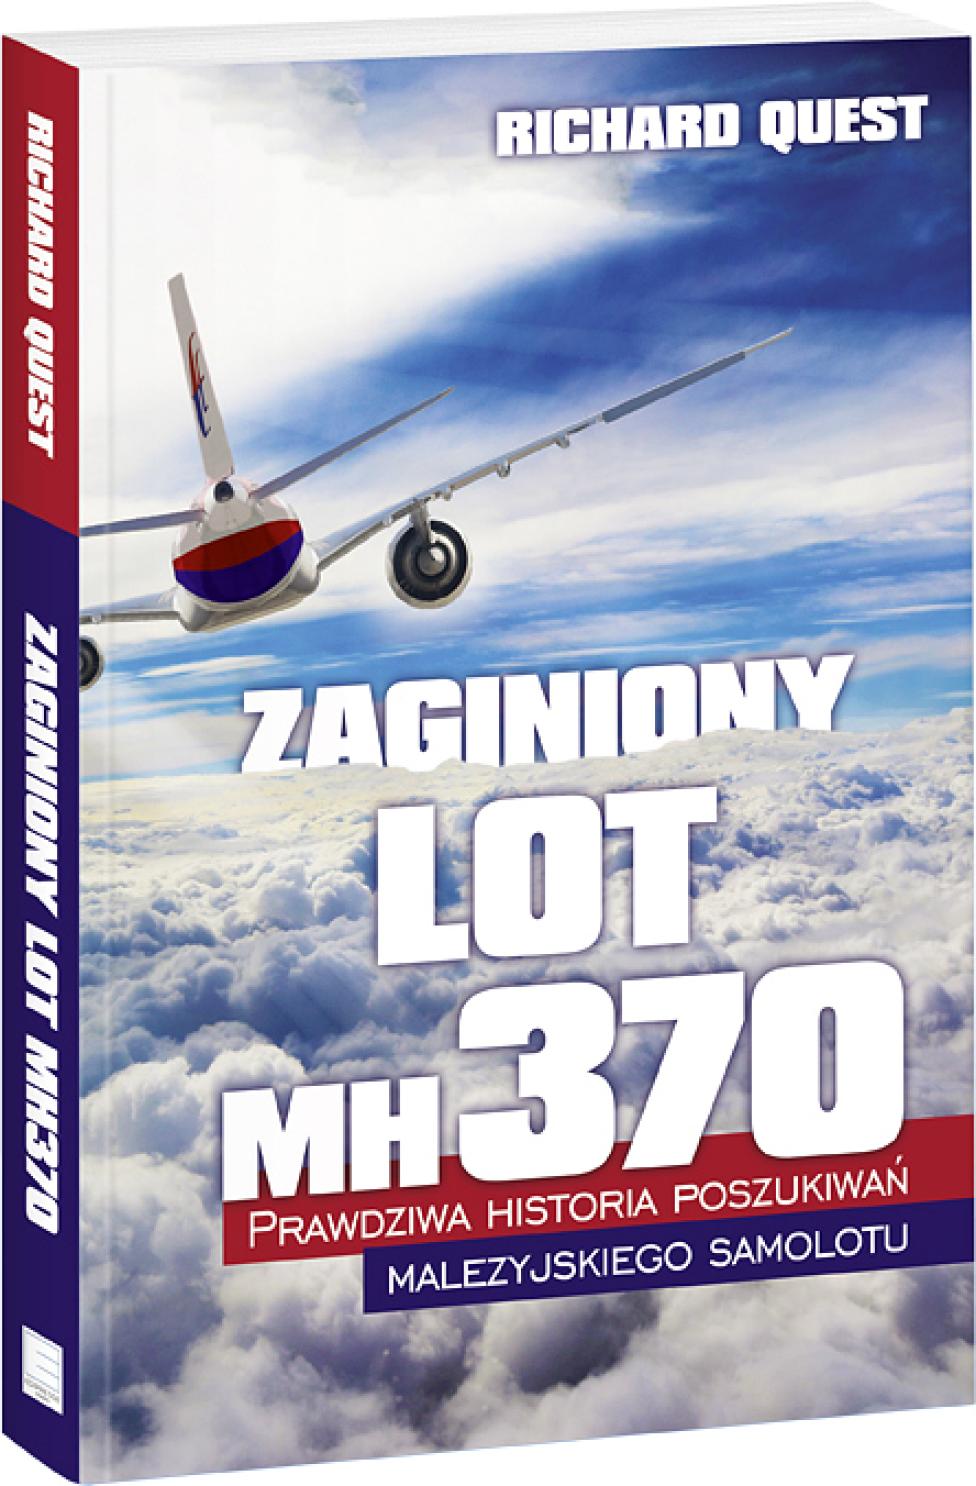 Książka: "Zaginiony lot MH370. Prawdziwa historia poszukiwań malezyjskiego samolotu." (fot. hitsalonik.pl)